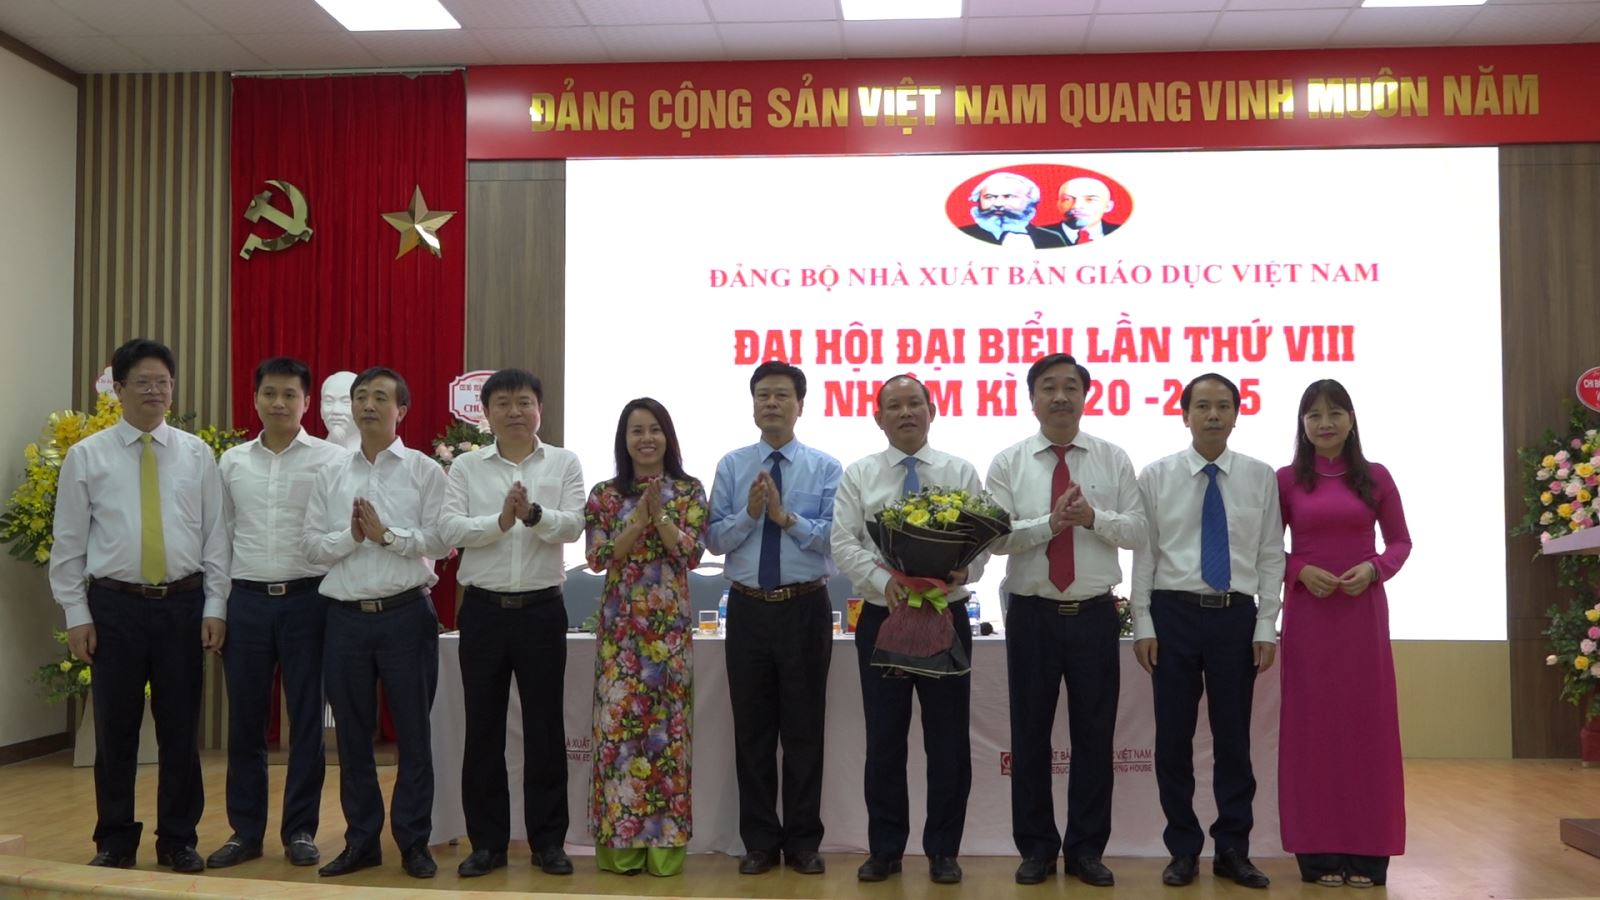 Đại hội Đại biểu Đảng bộ Nhà xuất bản Giáo dục Việt Nam lần thứ VIII, nhiệm kỳ 2020-2025